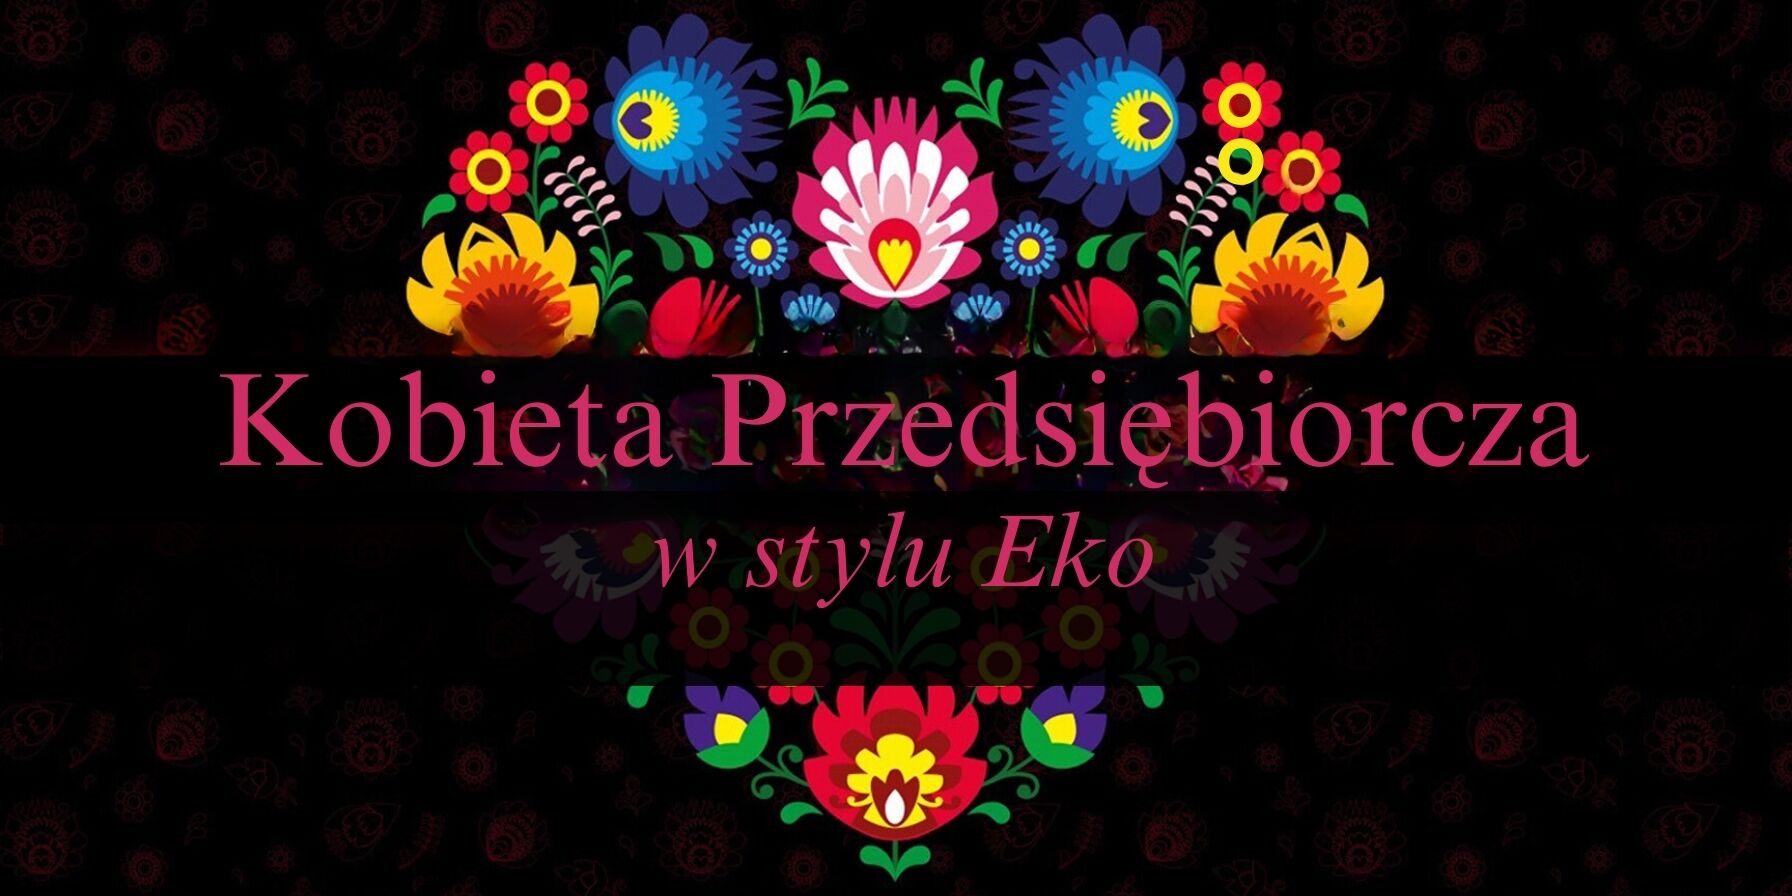 Alternatywny opis zdjęcia: Kolorowy napis "Kobieta Przedsiębiorcza w stylu Eko" na ciemnym tle, otoczony symetrycznym wzorem w stylu ludowym z kwiatami i roślinami w jaskrawych kolorach.